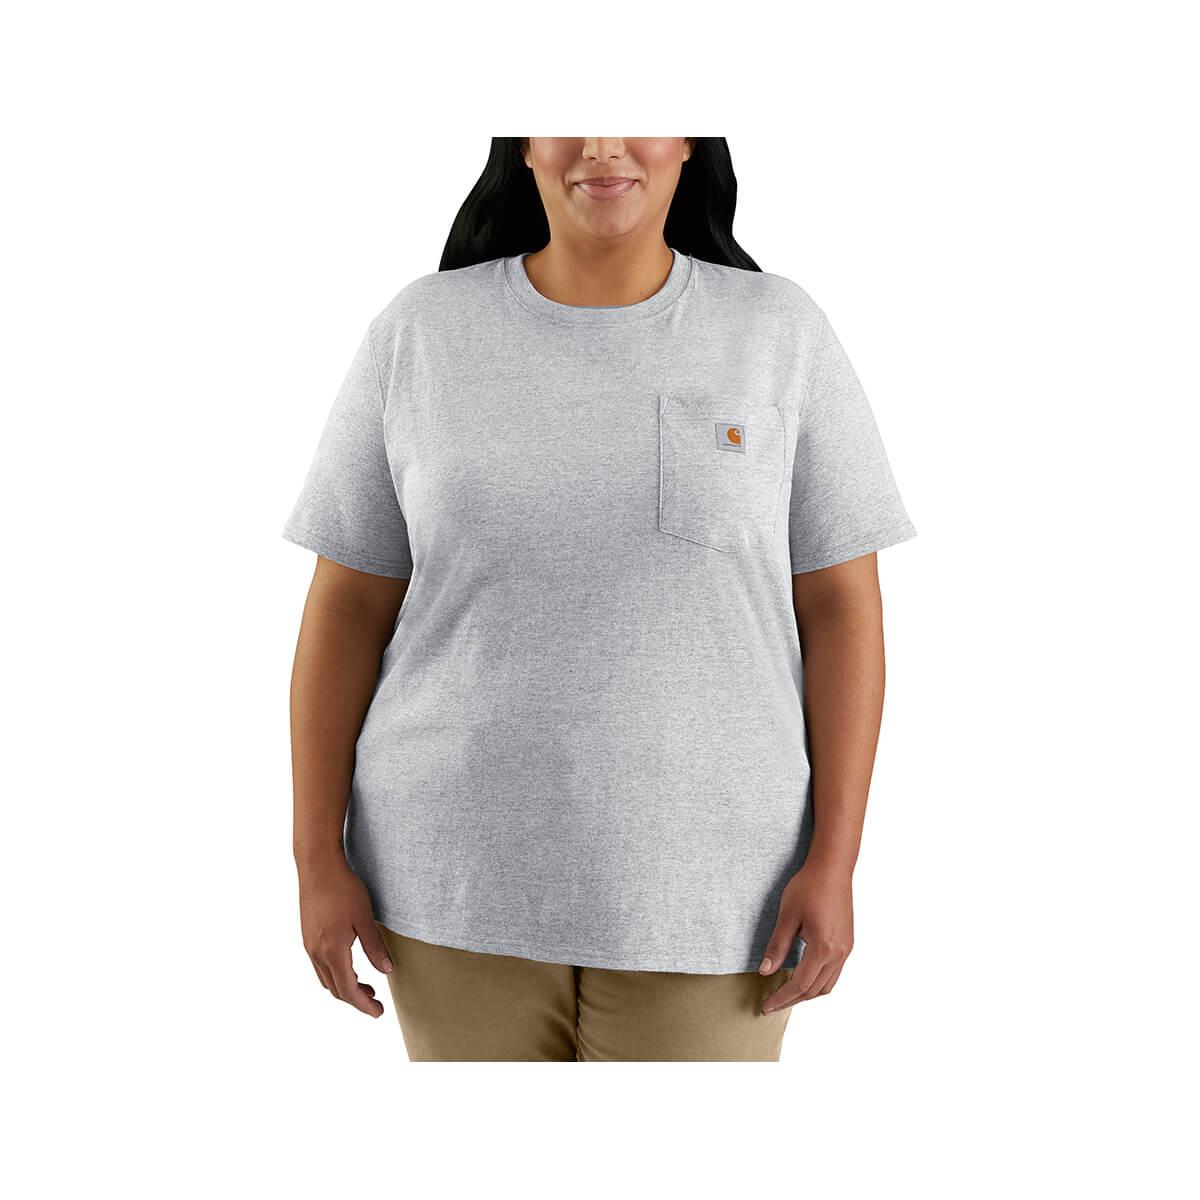  Women's Heavyweight Short Sleeve Pocket T- Shirt - Curvy